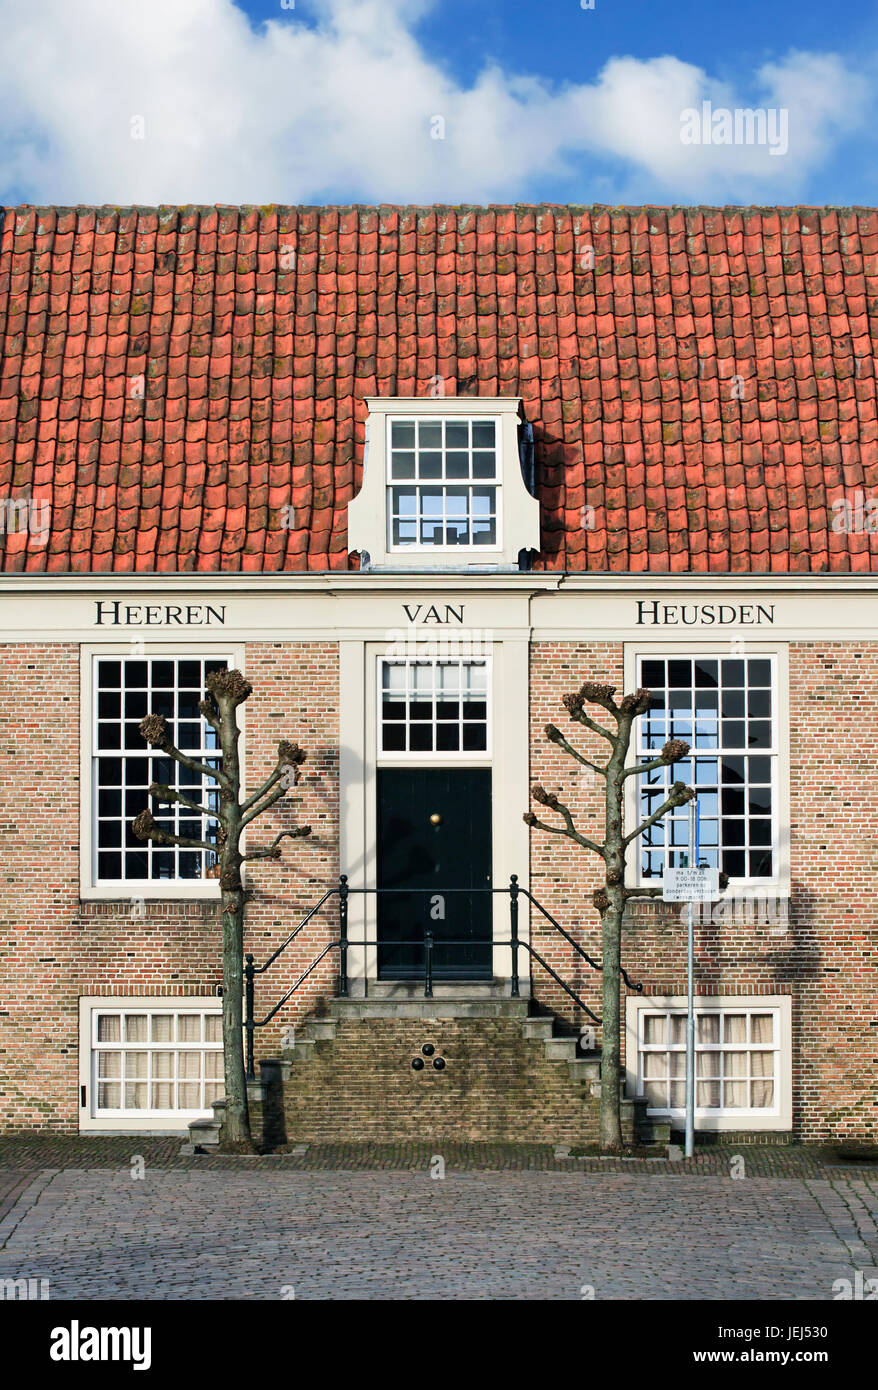 Rinnovato monumentale palazzo in mattoni con scalinata, Heusden, Paesi Bassi Foto Stock